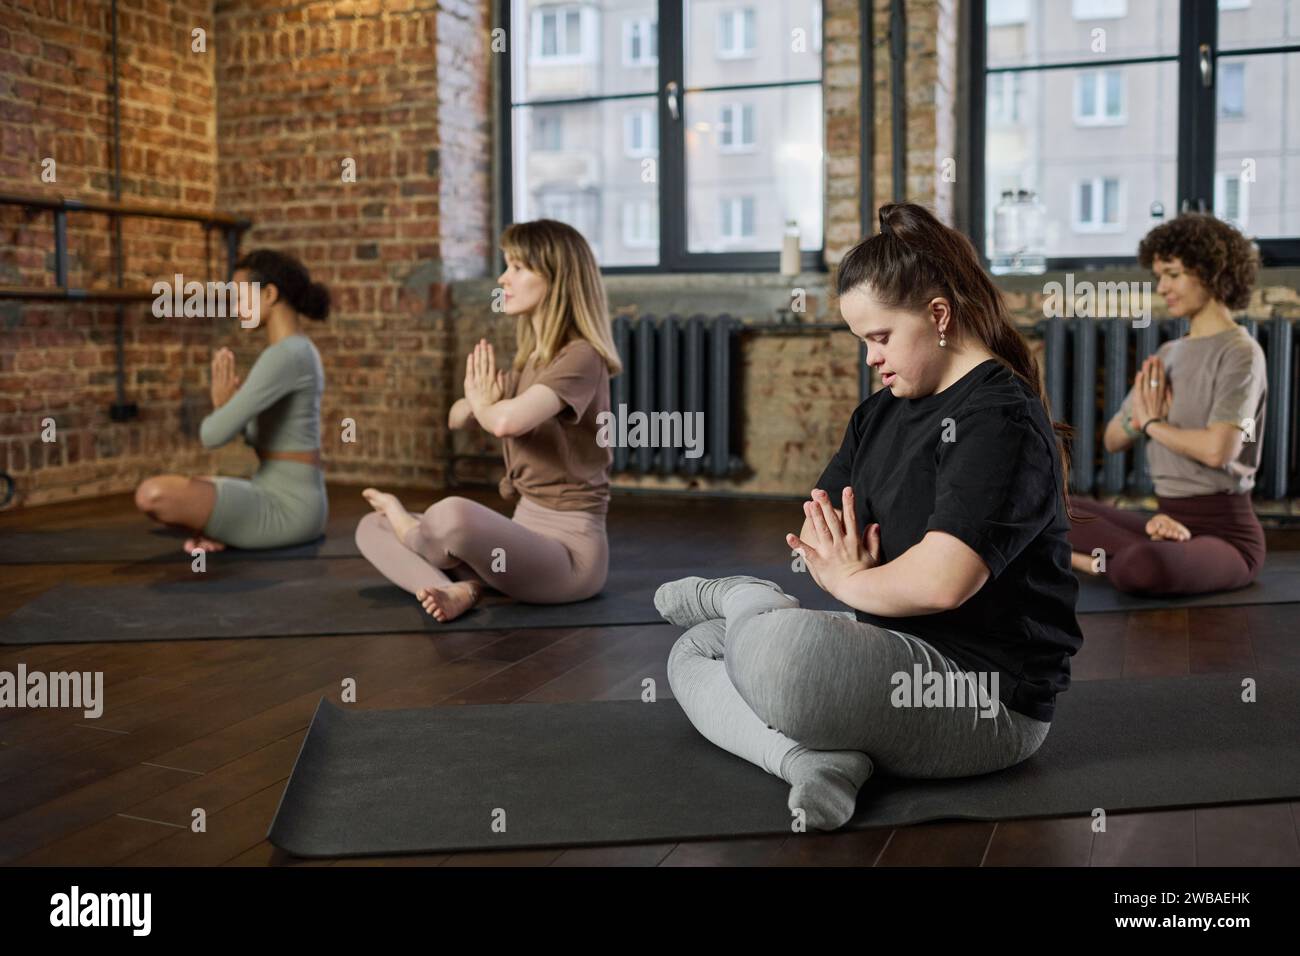 Weibliche Fitnesstrainerin mit Behinderung hält die Hände gegen die Brust, während sie auf dem Boden sitzt und Yoga im Fitnessstudio übt Stockfoto